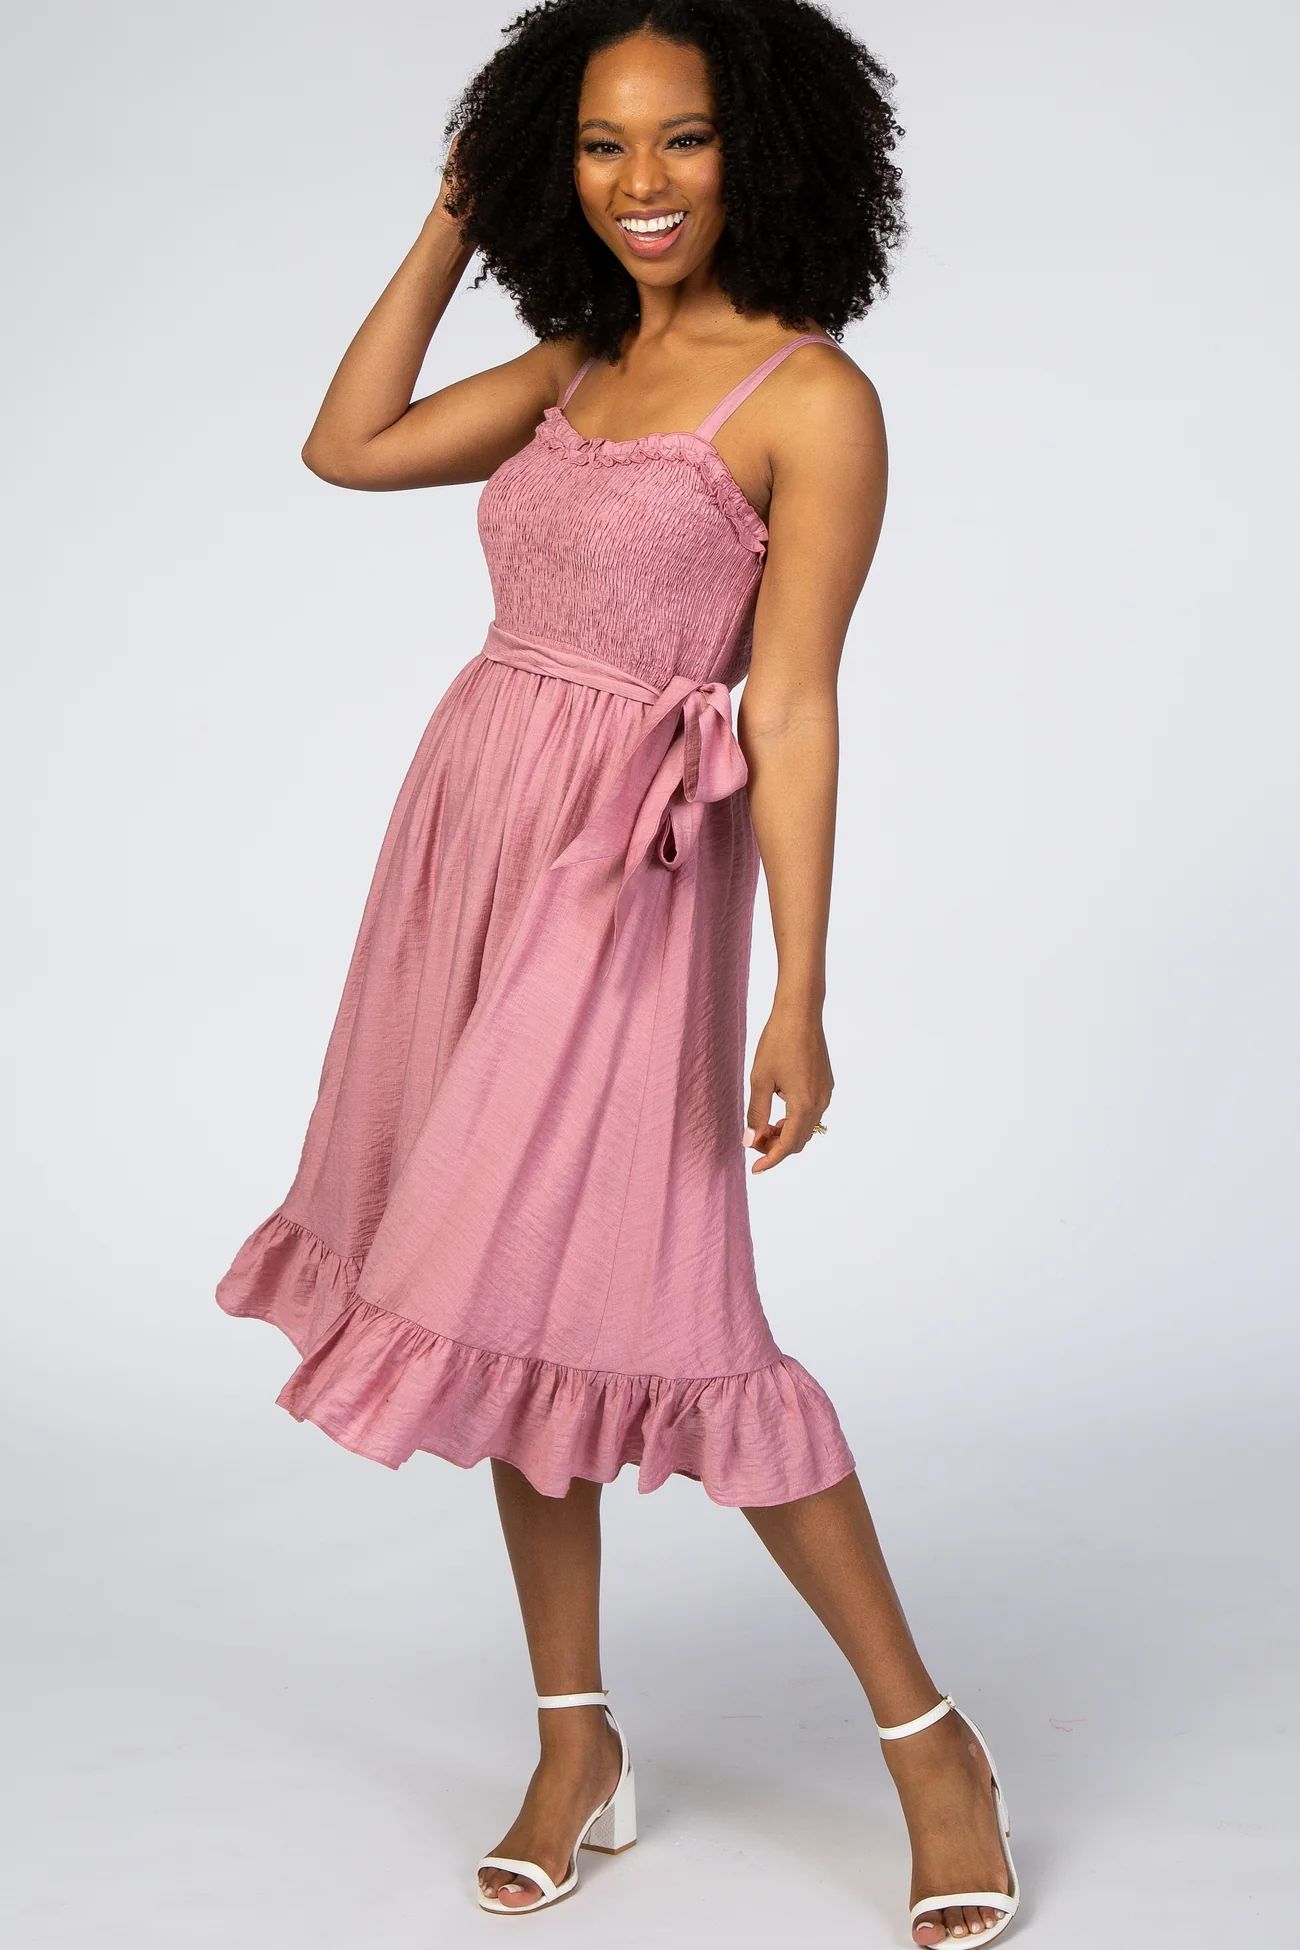 Pink Ruffle Smocked Dress | PinkBlush Maternity